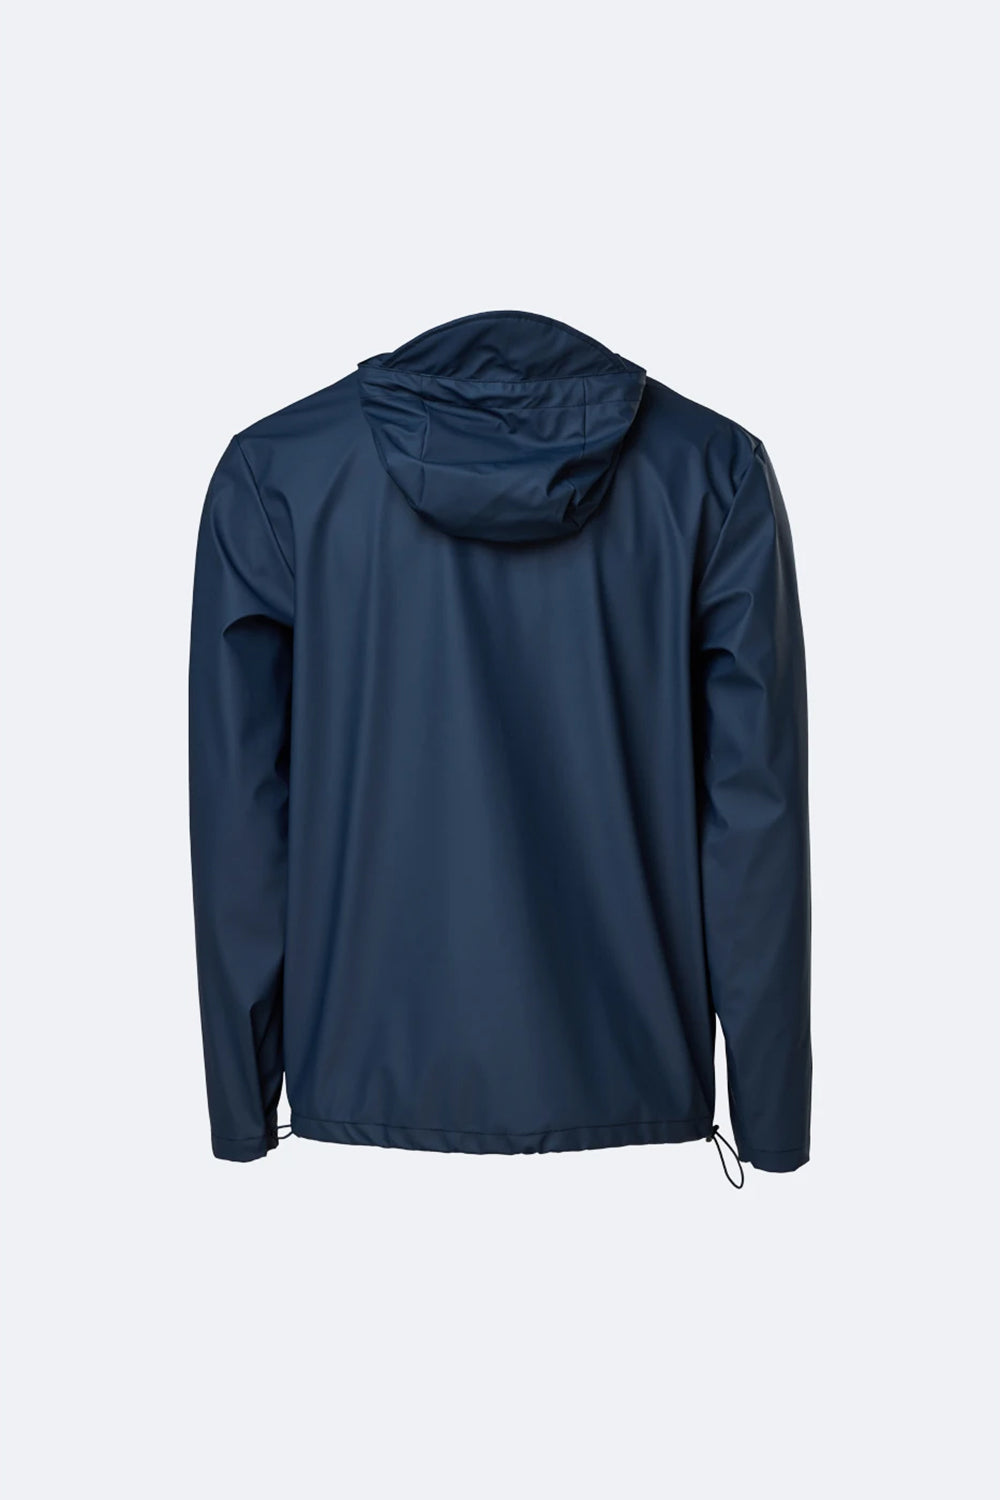 Rains Waterproof Short Hooded Coat (Blue)